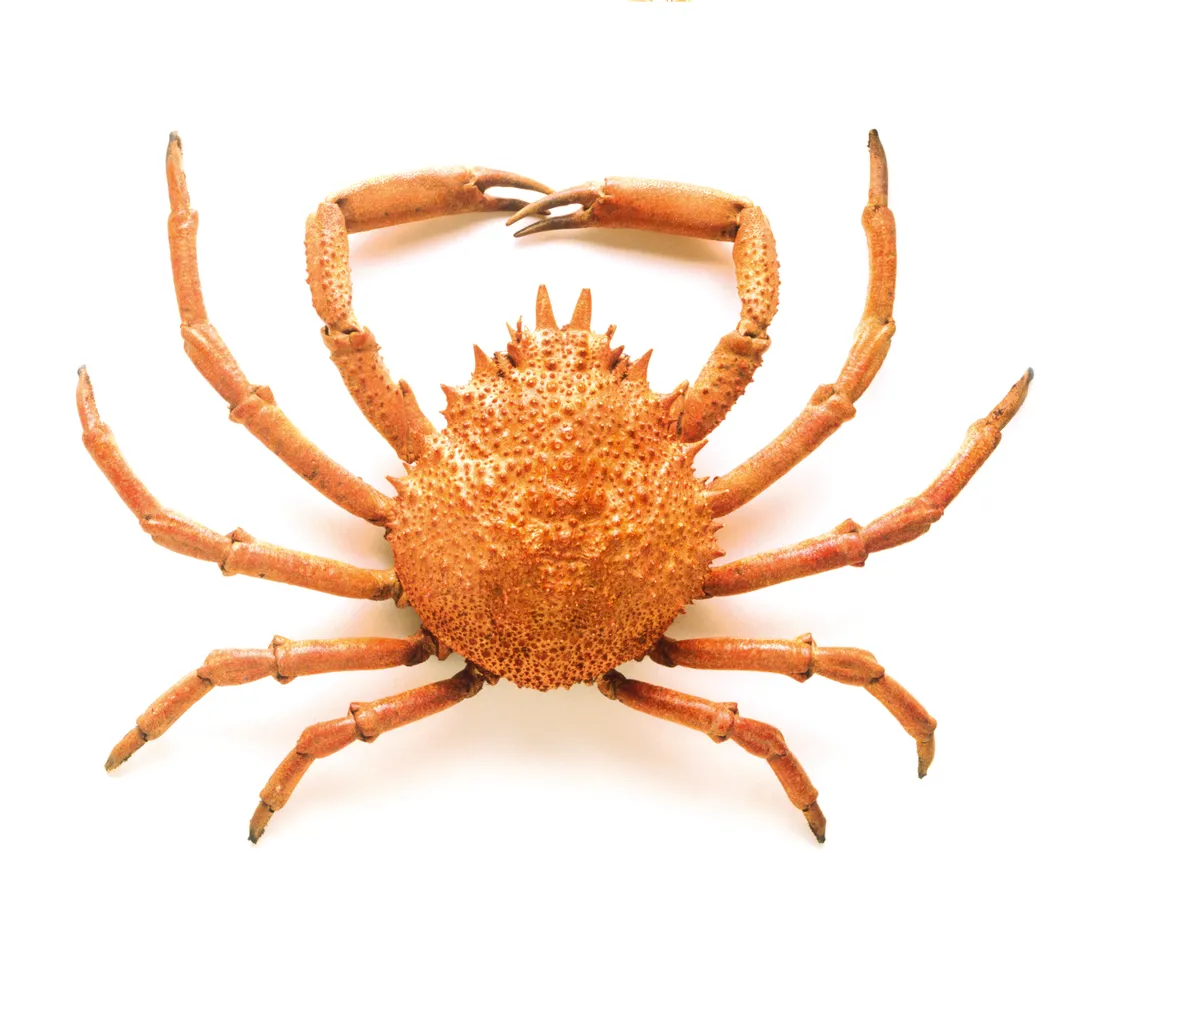 Common spider crab